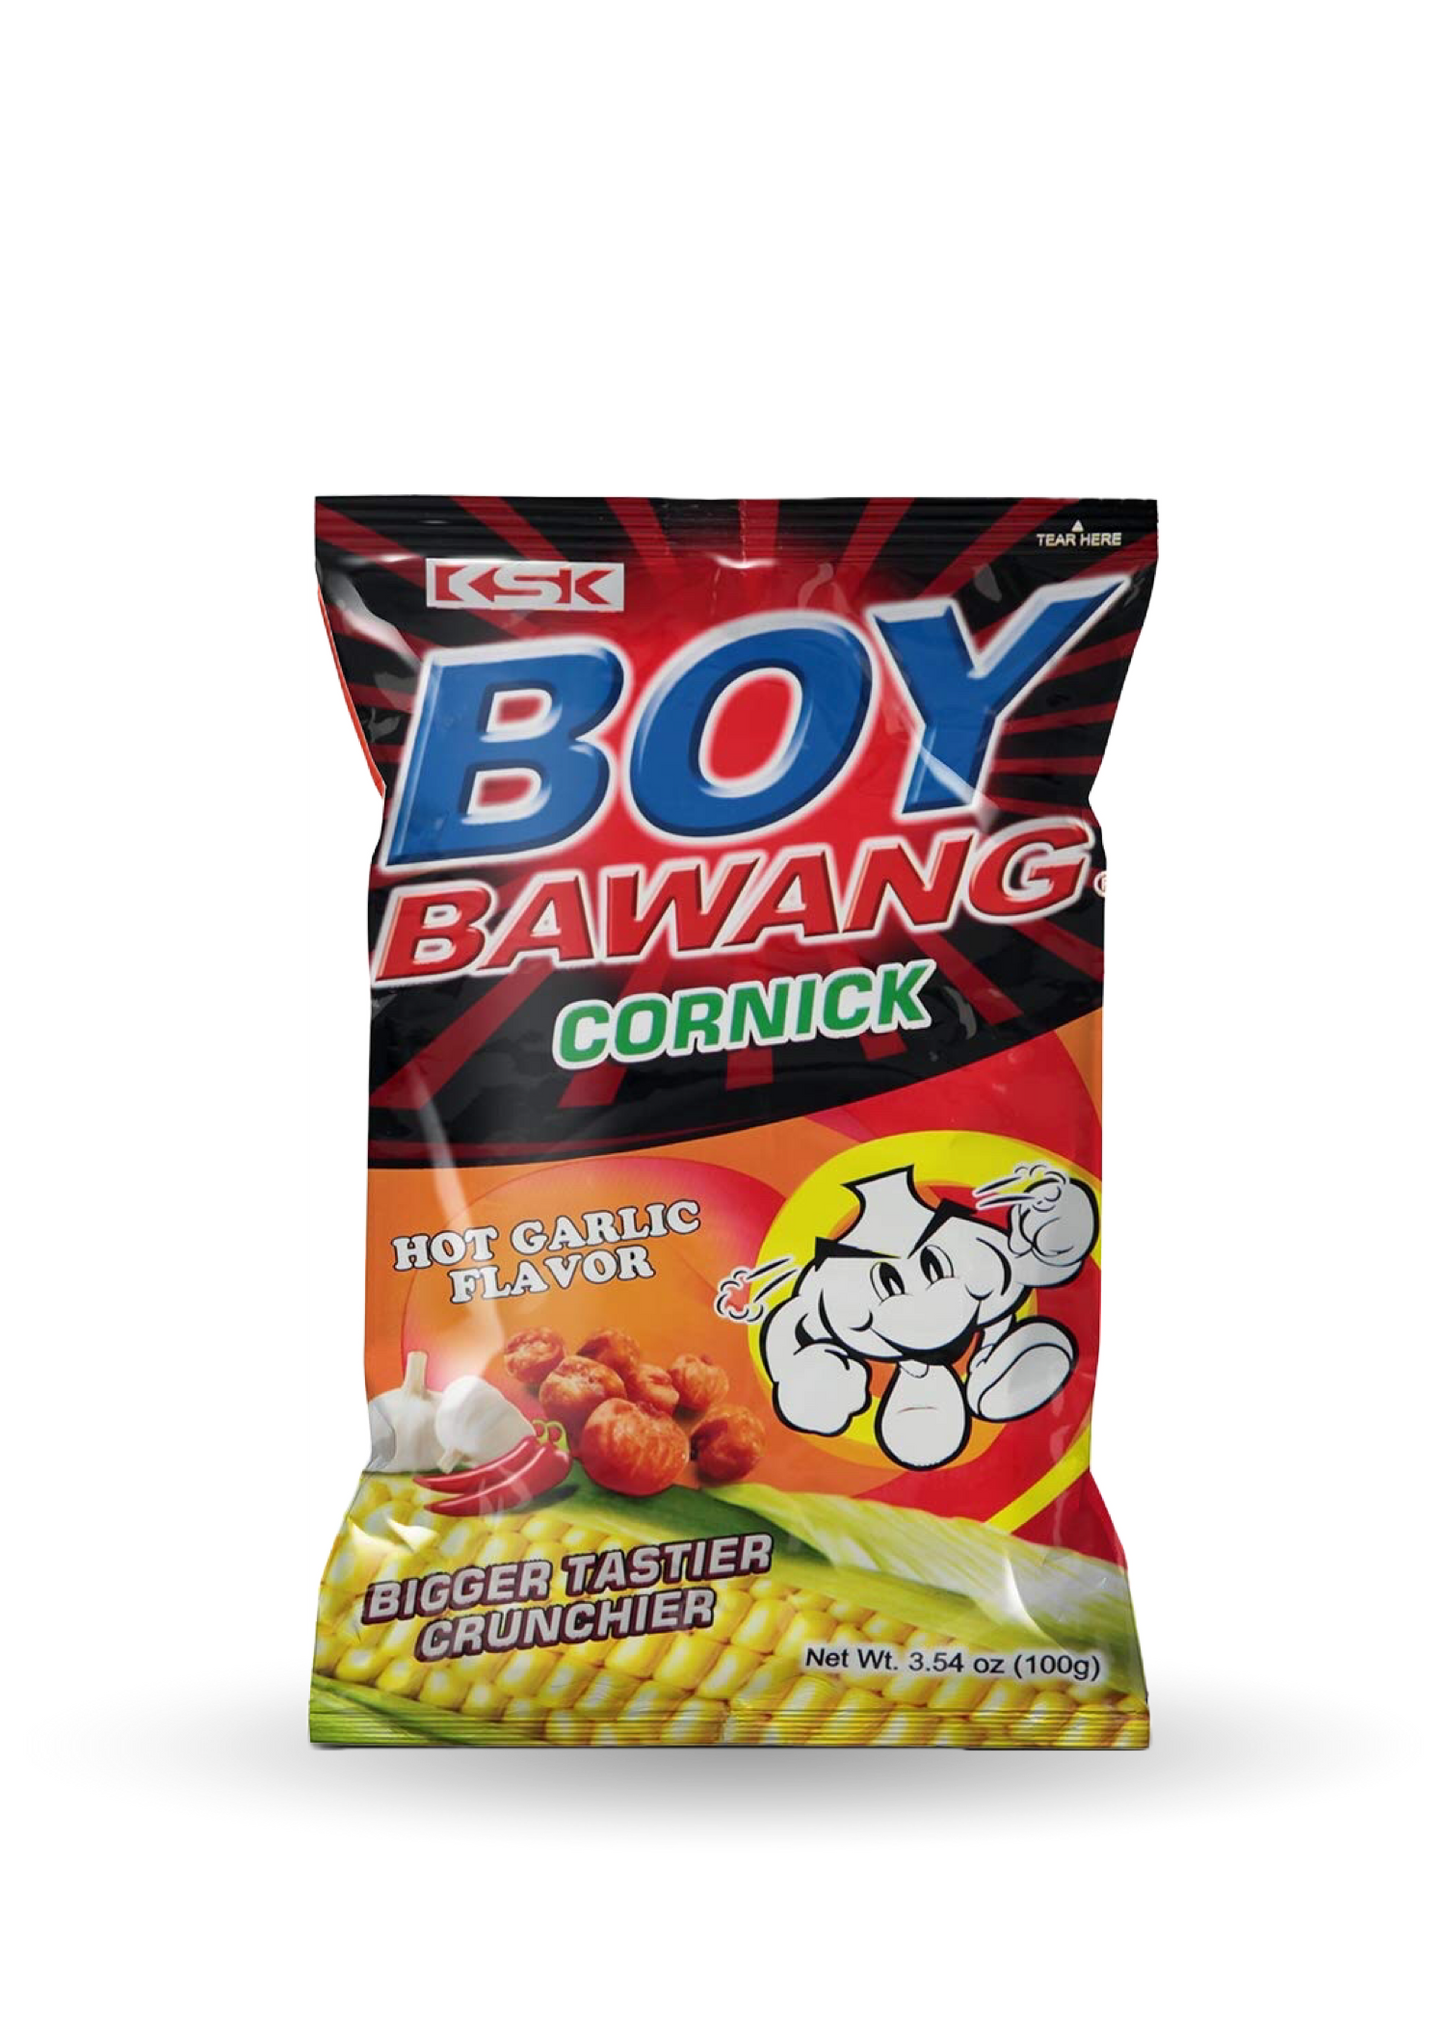 Boy Bawang | Cornick | Hot Garlic